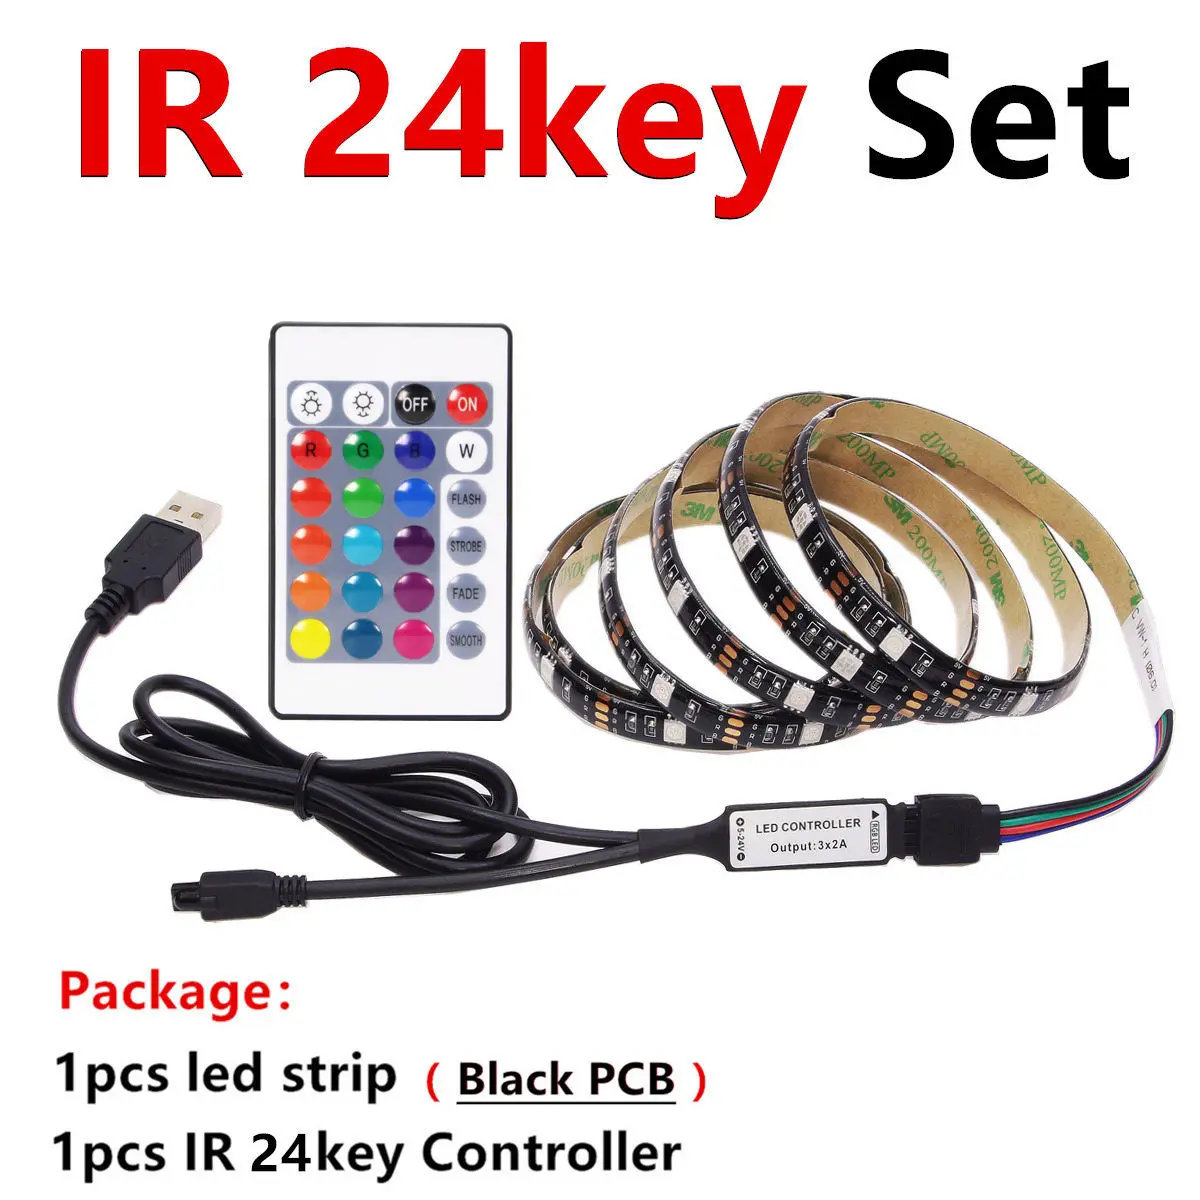 USB RGB Светодиодные ленты Водонепроницаемый 5V 5050 SMD RGB USB Светодиодные ленты светильник с регулируемой яркостью, лента светодиодный светильник 17key 44Key/24key Добавить Wi-Fi - Испускаемый цвет: Black PCB 24key Set